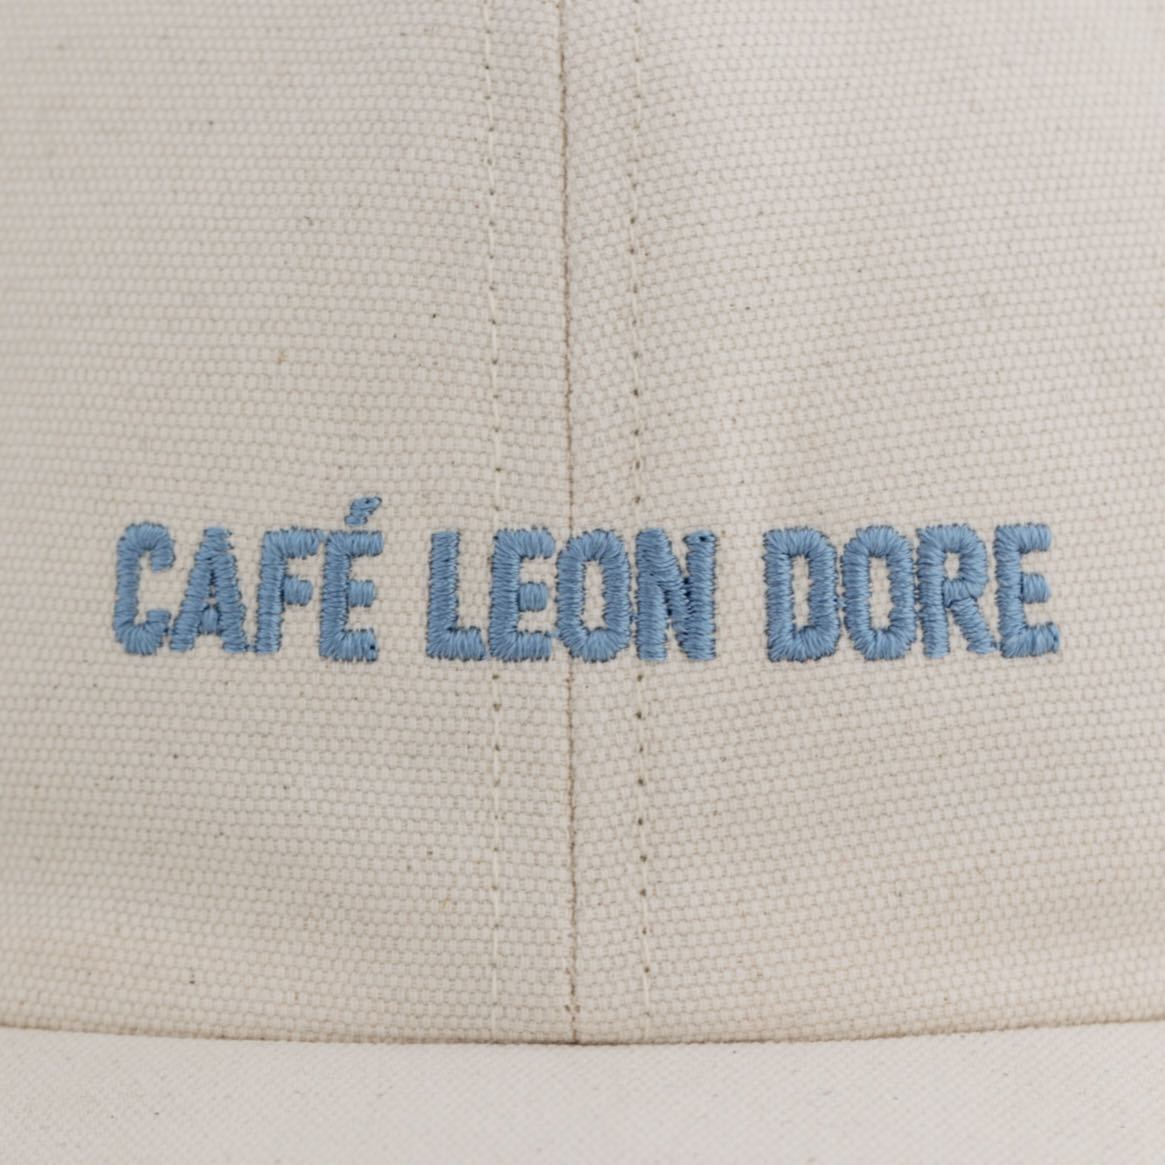 Cafe Leon Dore キャップ Aime Leon Dore エイムレオンドレ Cap ベースボールキャップ カフェレオンドレ